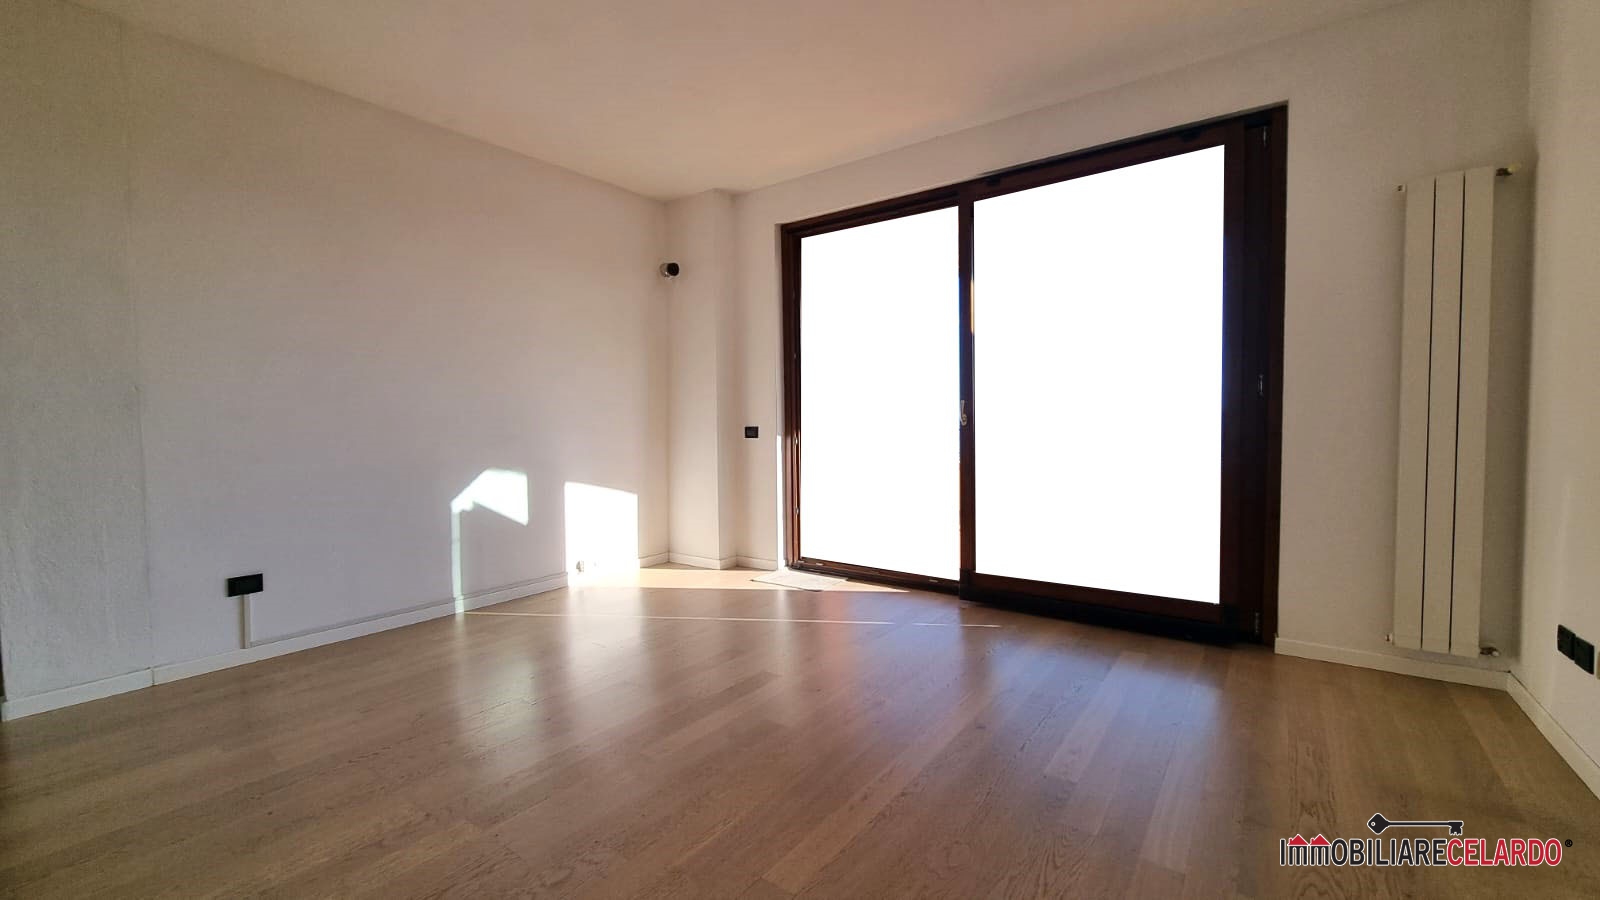 Appartamento in vendita a Casole d'Elsa, 3 locali, prezzo € 125.000 | PortaleAgenzieImmobiliari.it